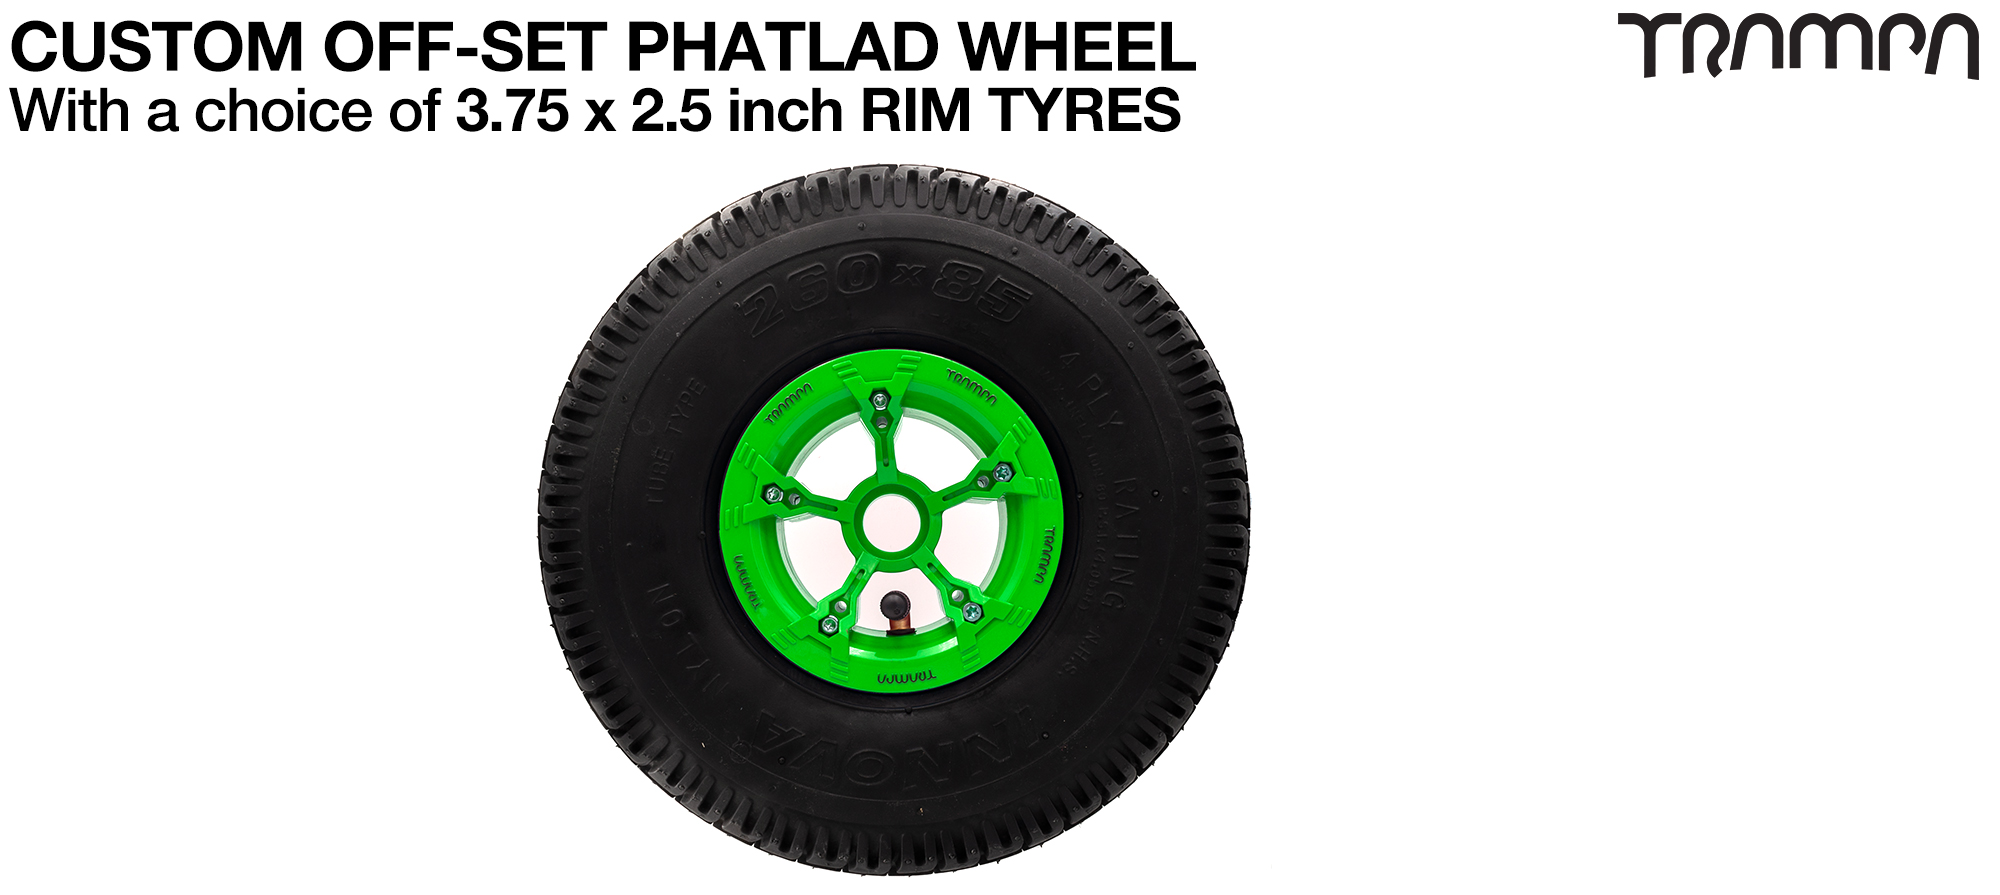 TRAMPA PHATLADS 5 spoke Wheels - 10 Inch Tyres 